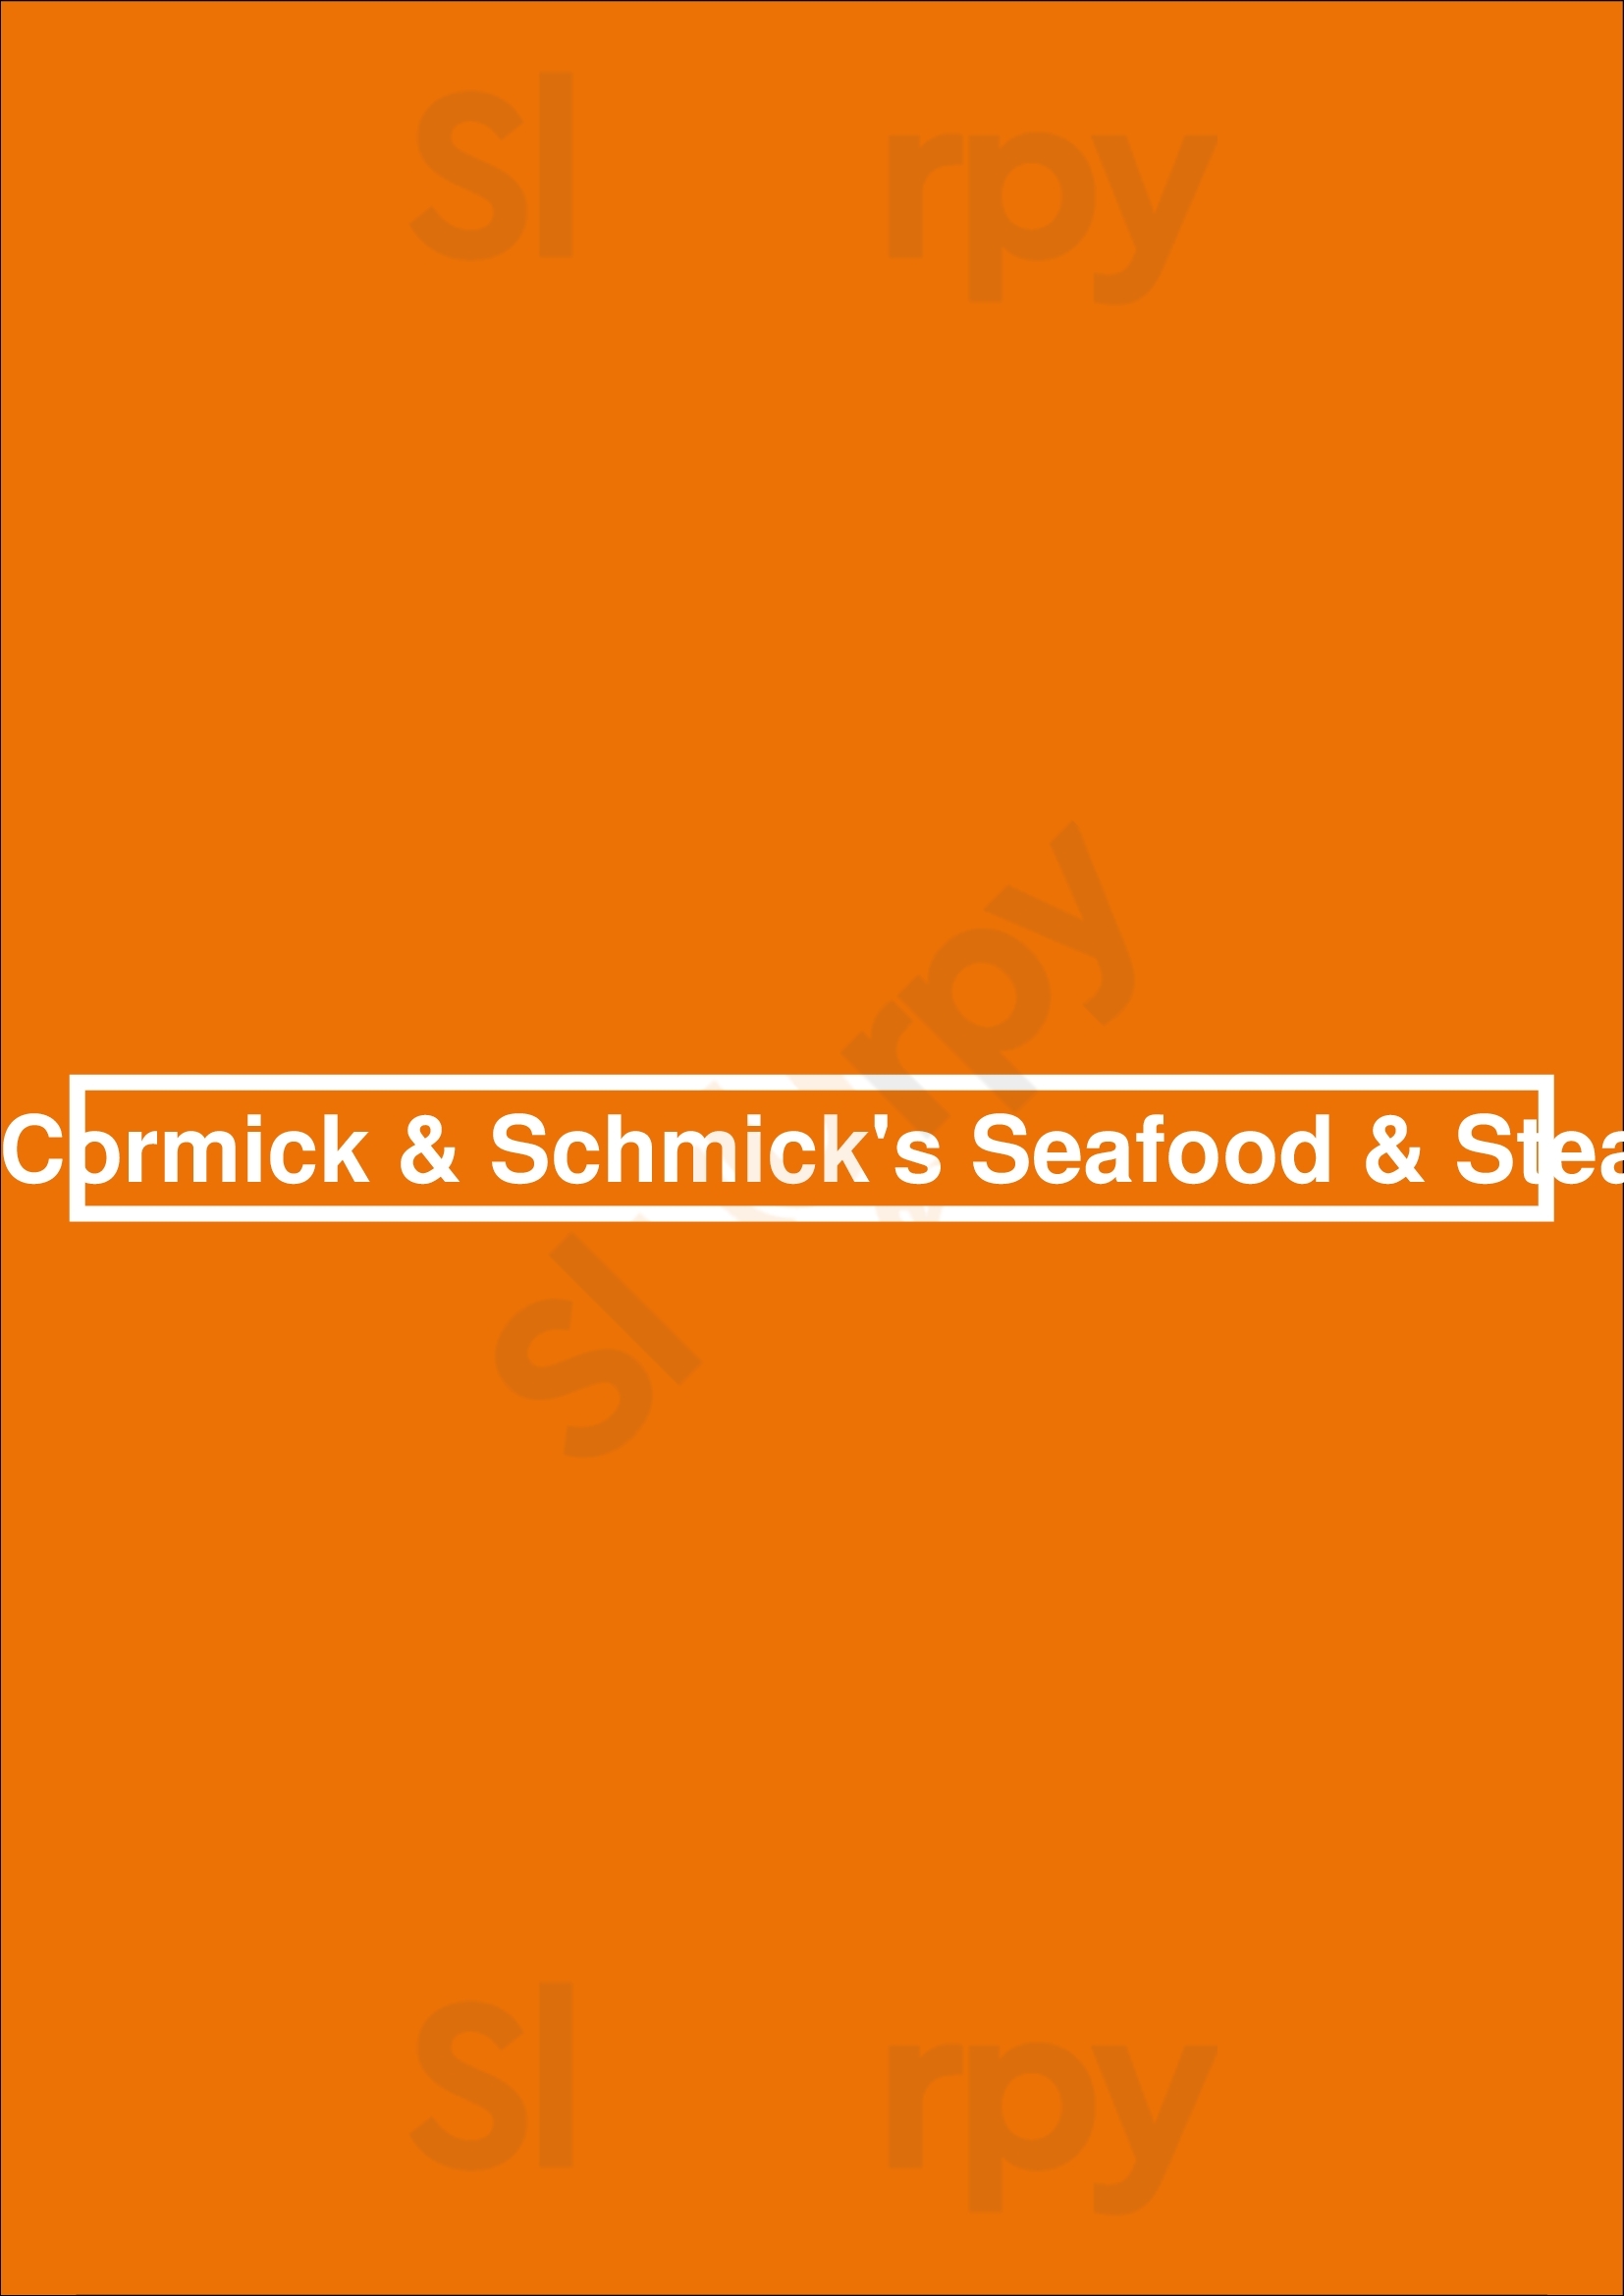 Mccormick & Schmick's Seafood & Steaks Arlington Menu - 1